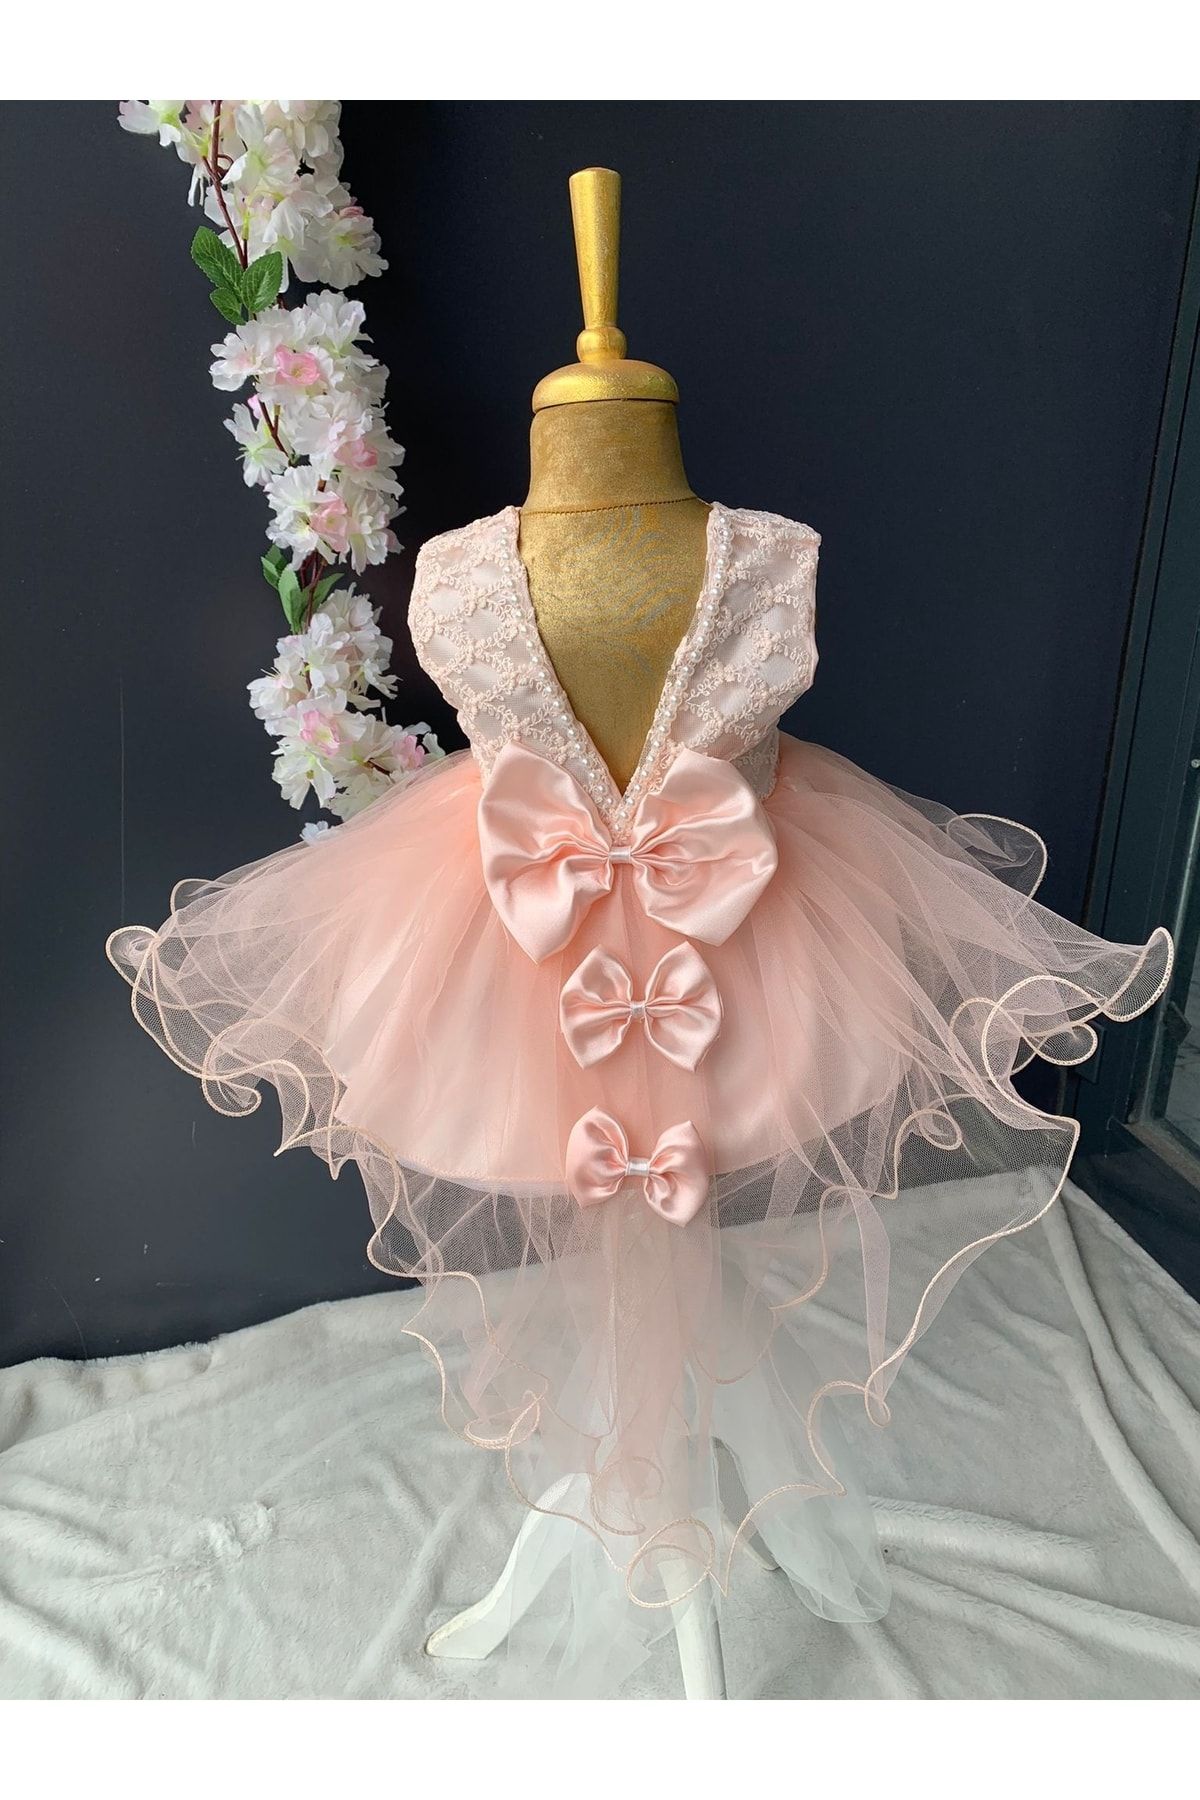 PİLEKİ BABY 0 6 Ay Yenidoğan Bebek Mevlüt Elbisesi Prenses Elbise Dantelli Gelinlik Elbise